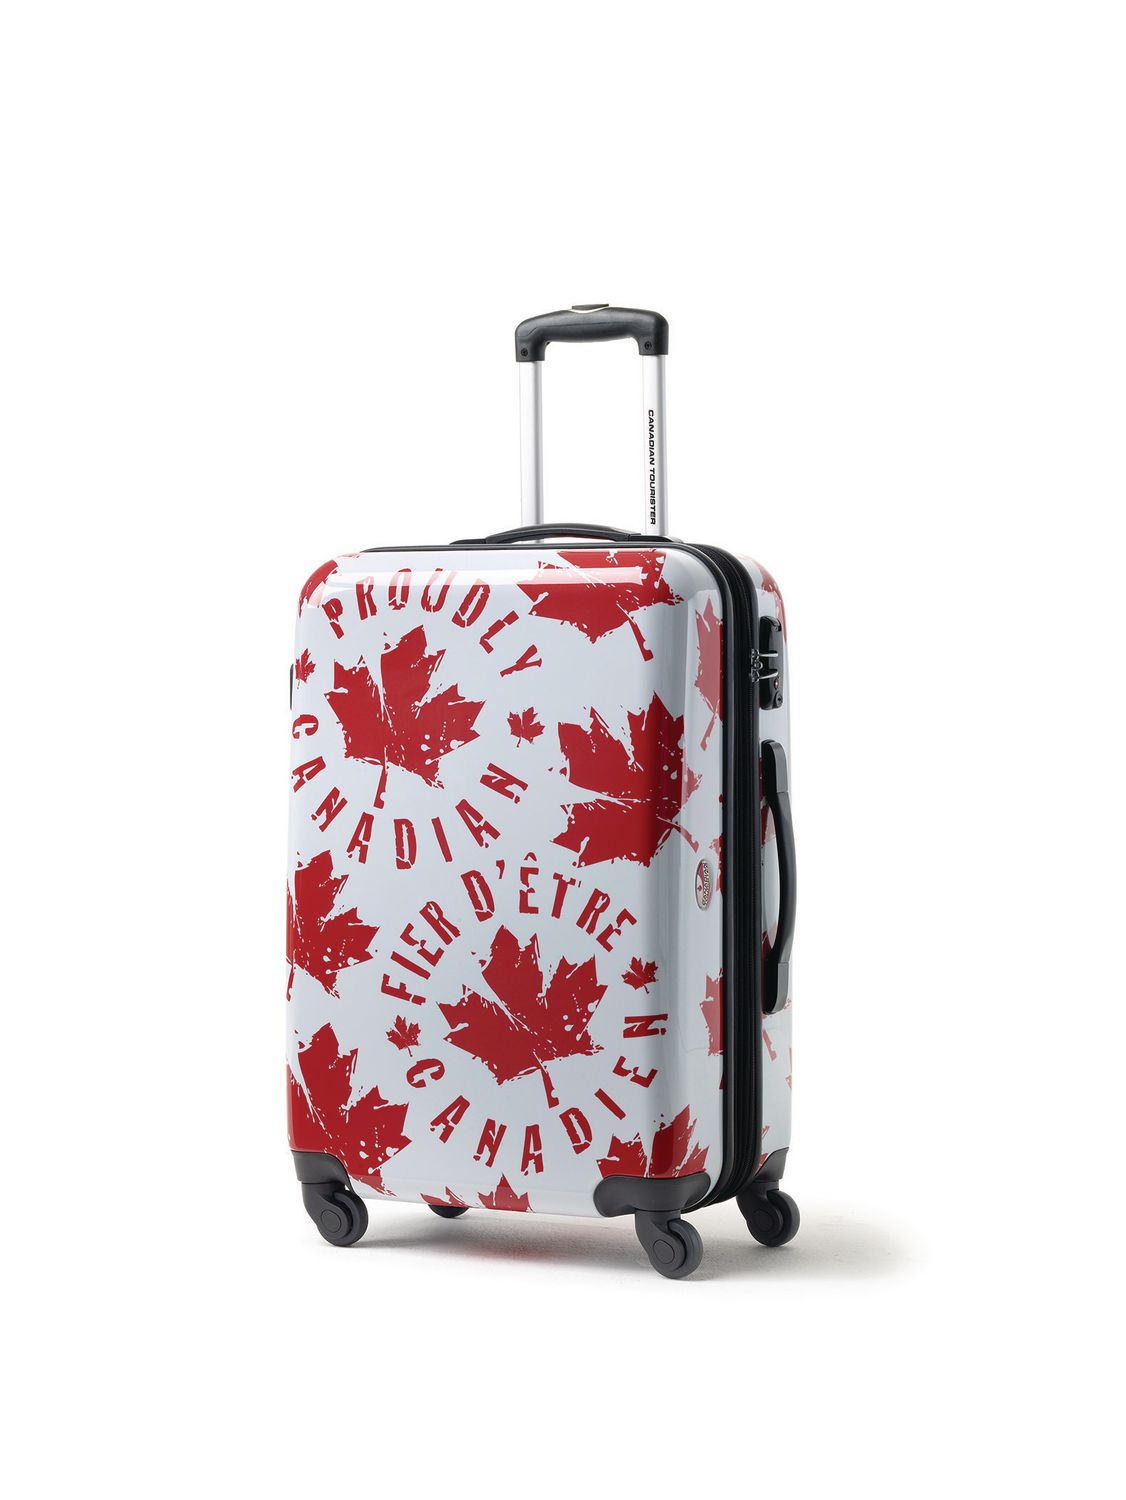 canada travel luggage